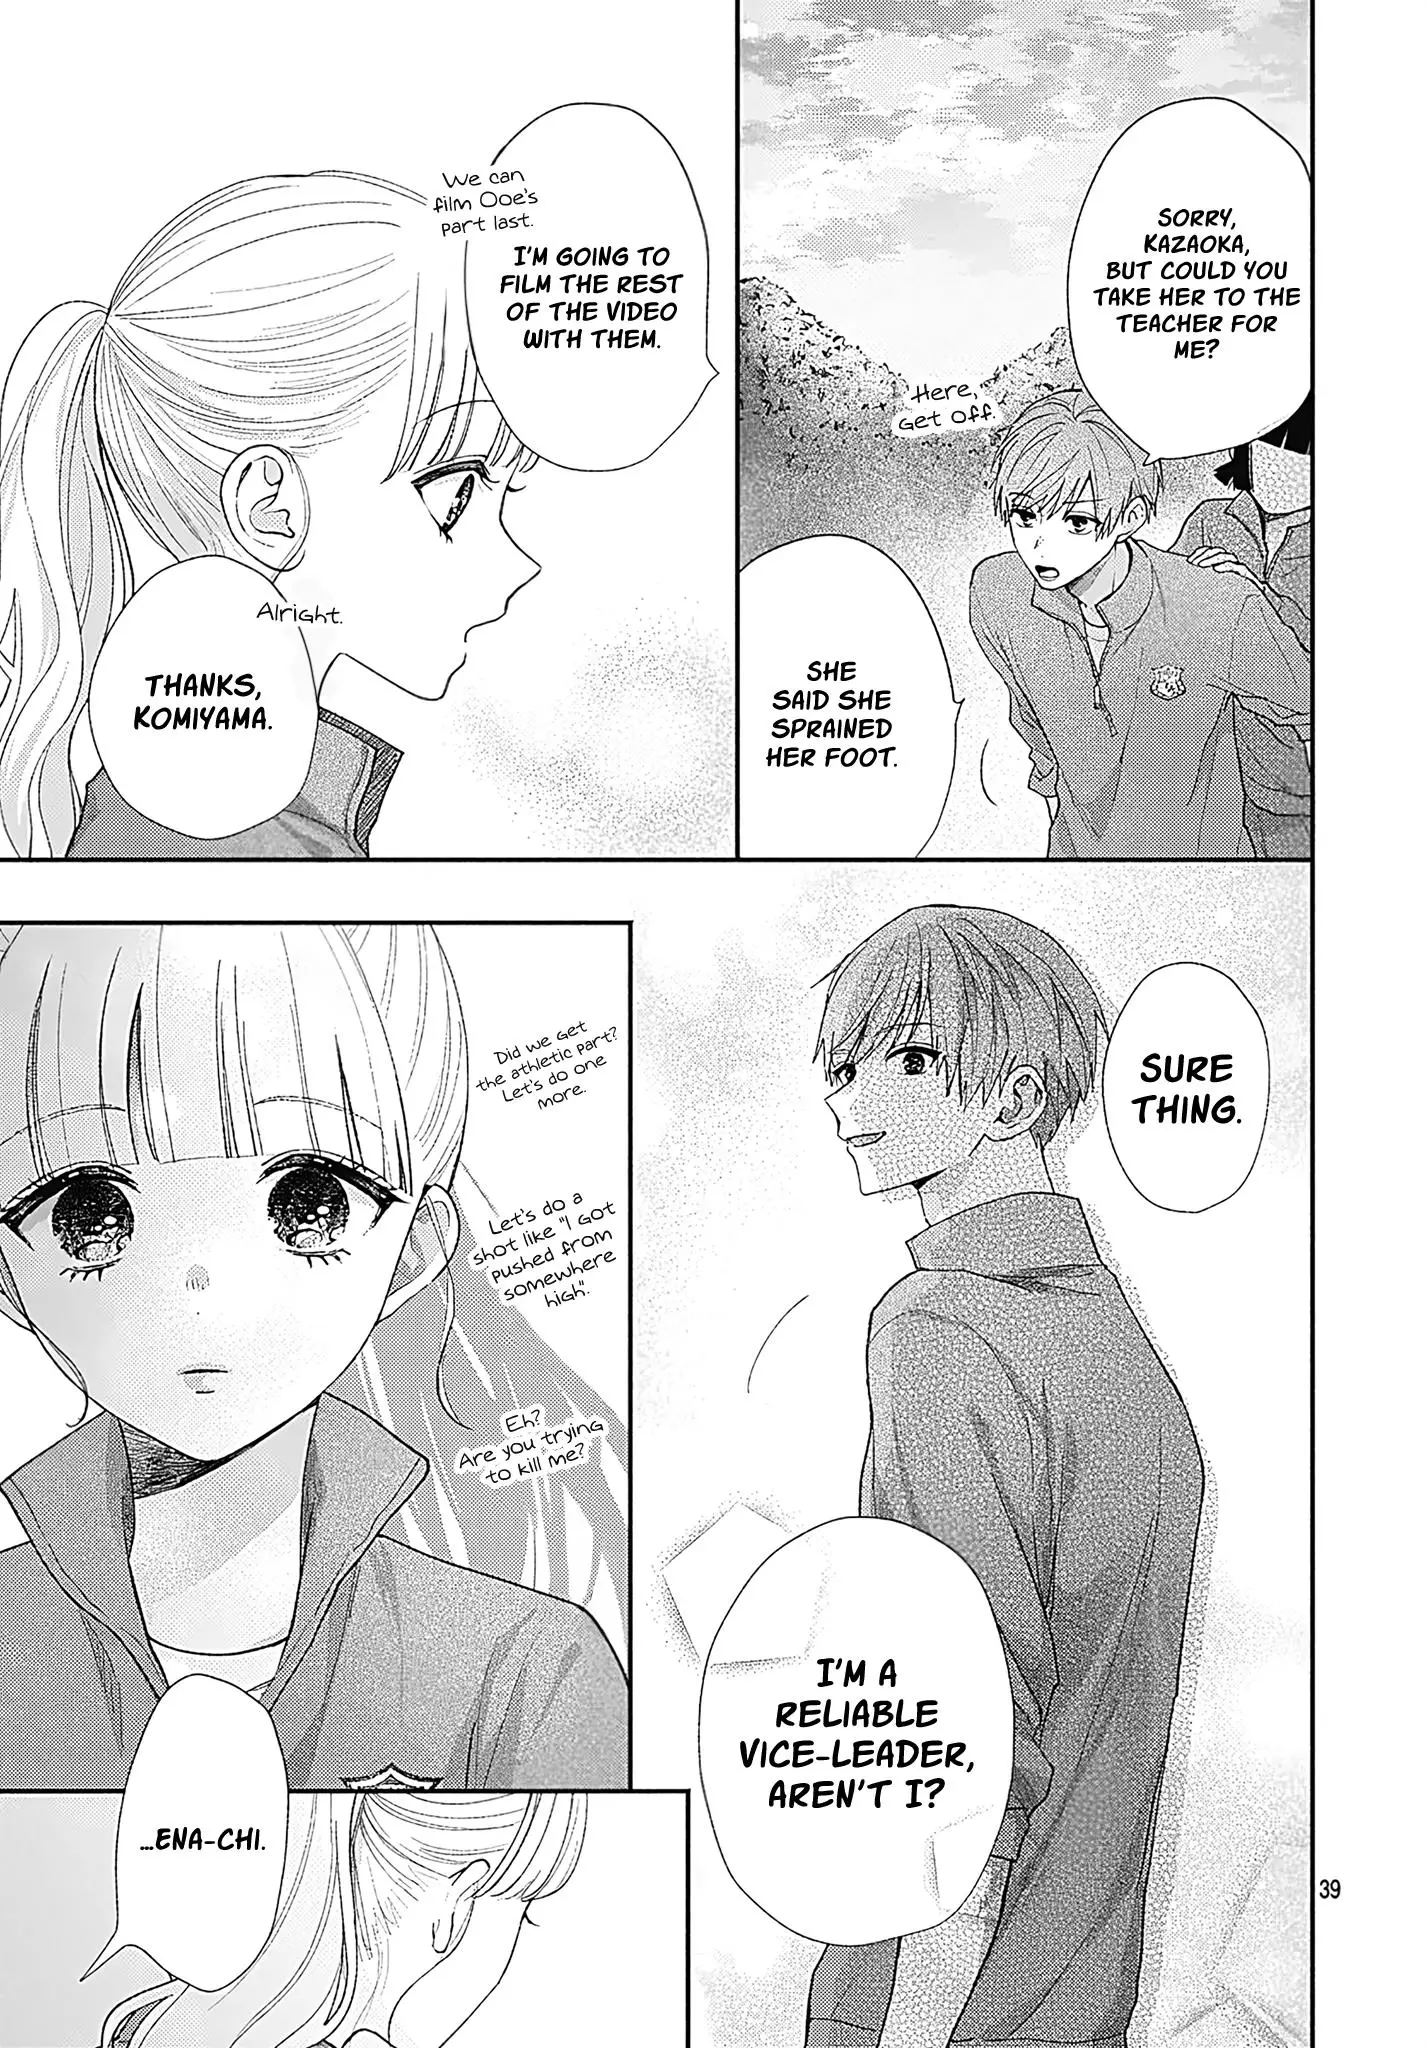 I Hate Komiyama - 4 page 39-2cea2a54